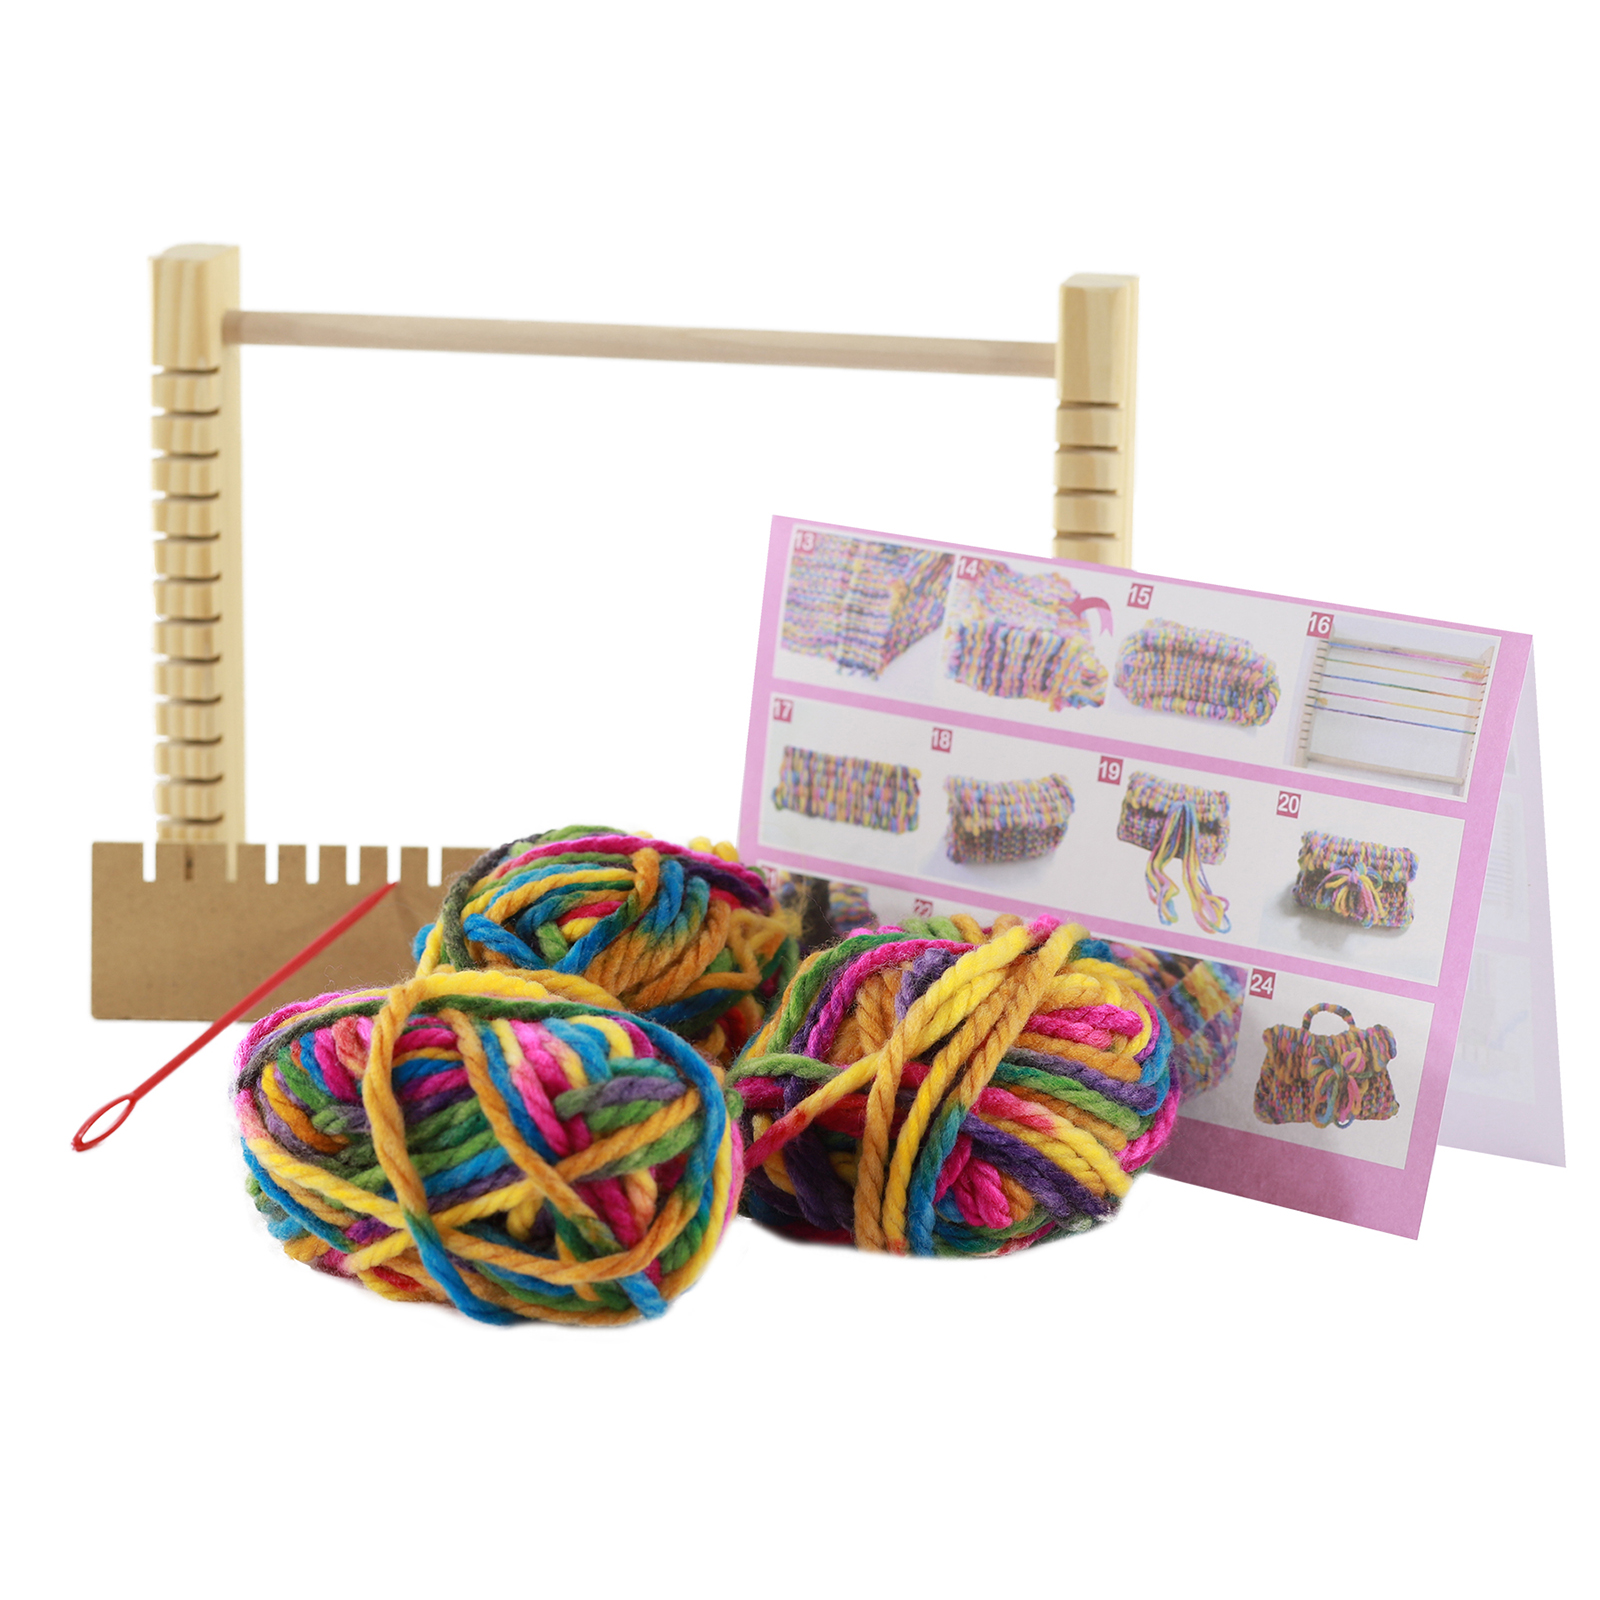 Вязание на луме (knitting loom) и тенерифе.